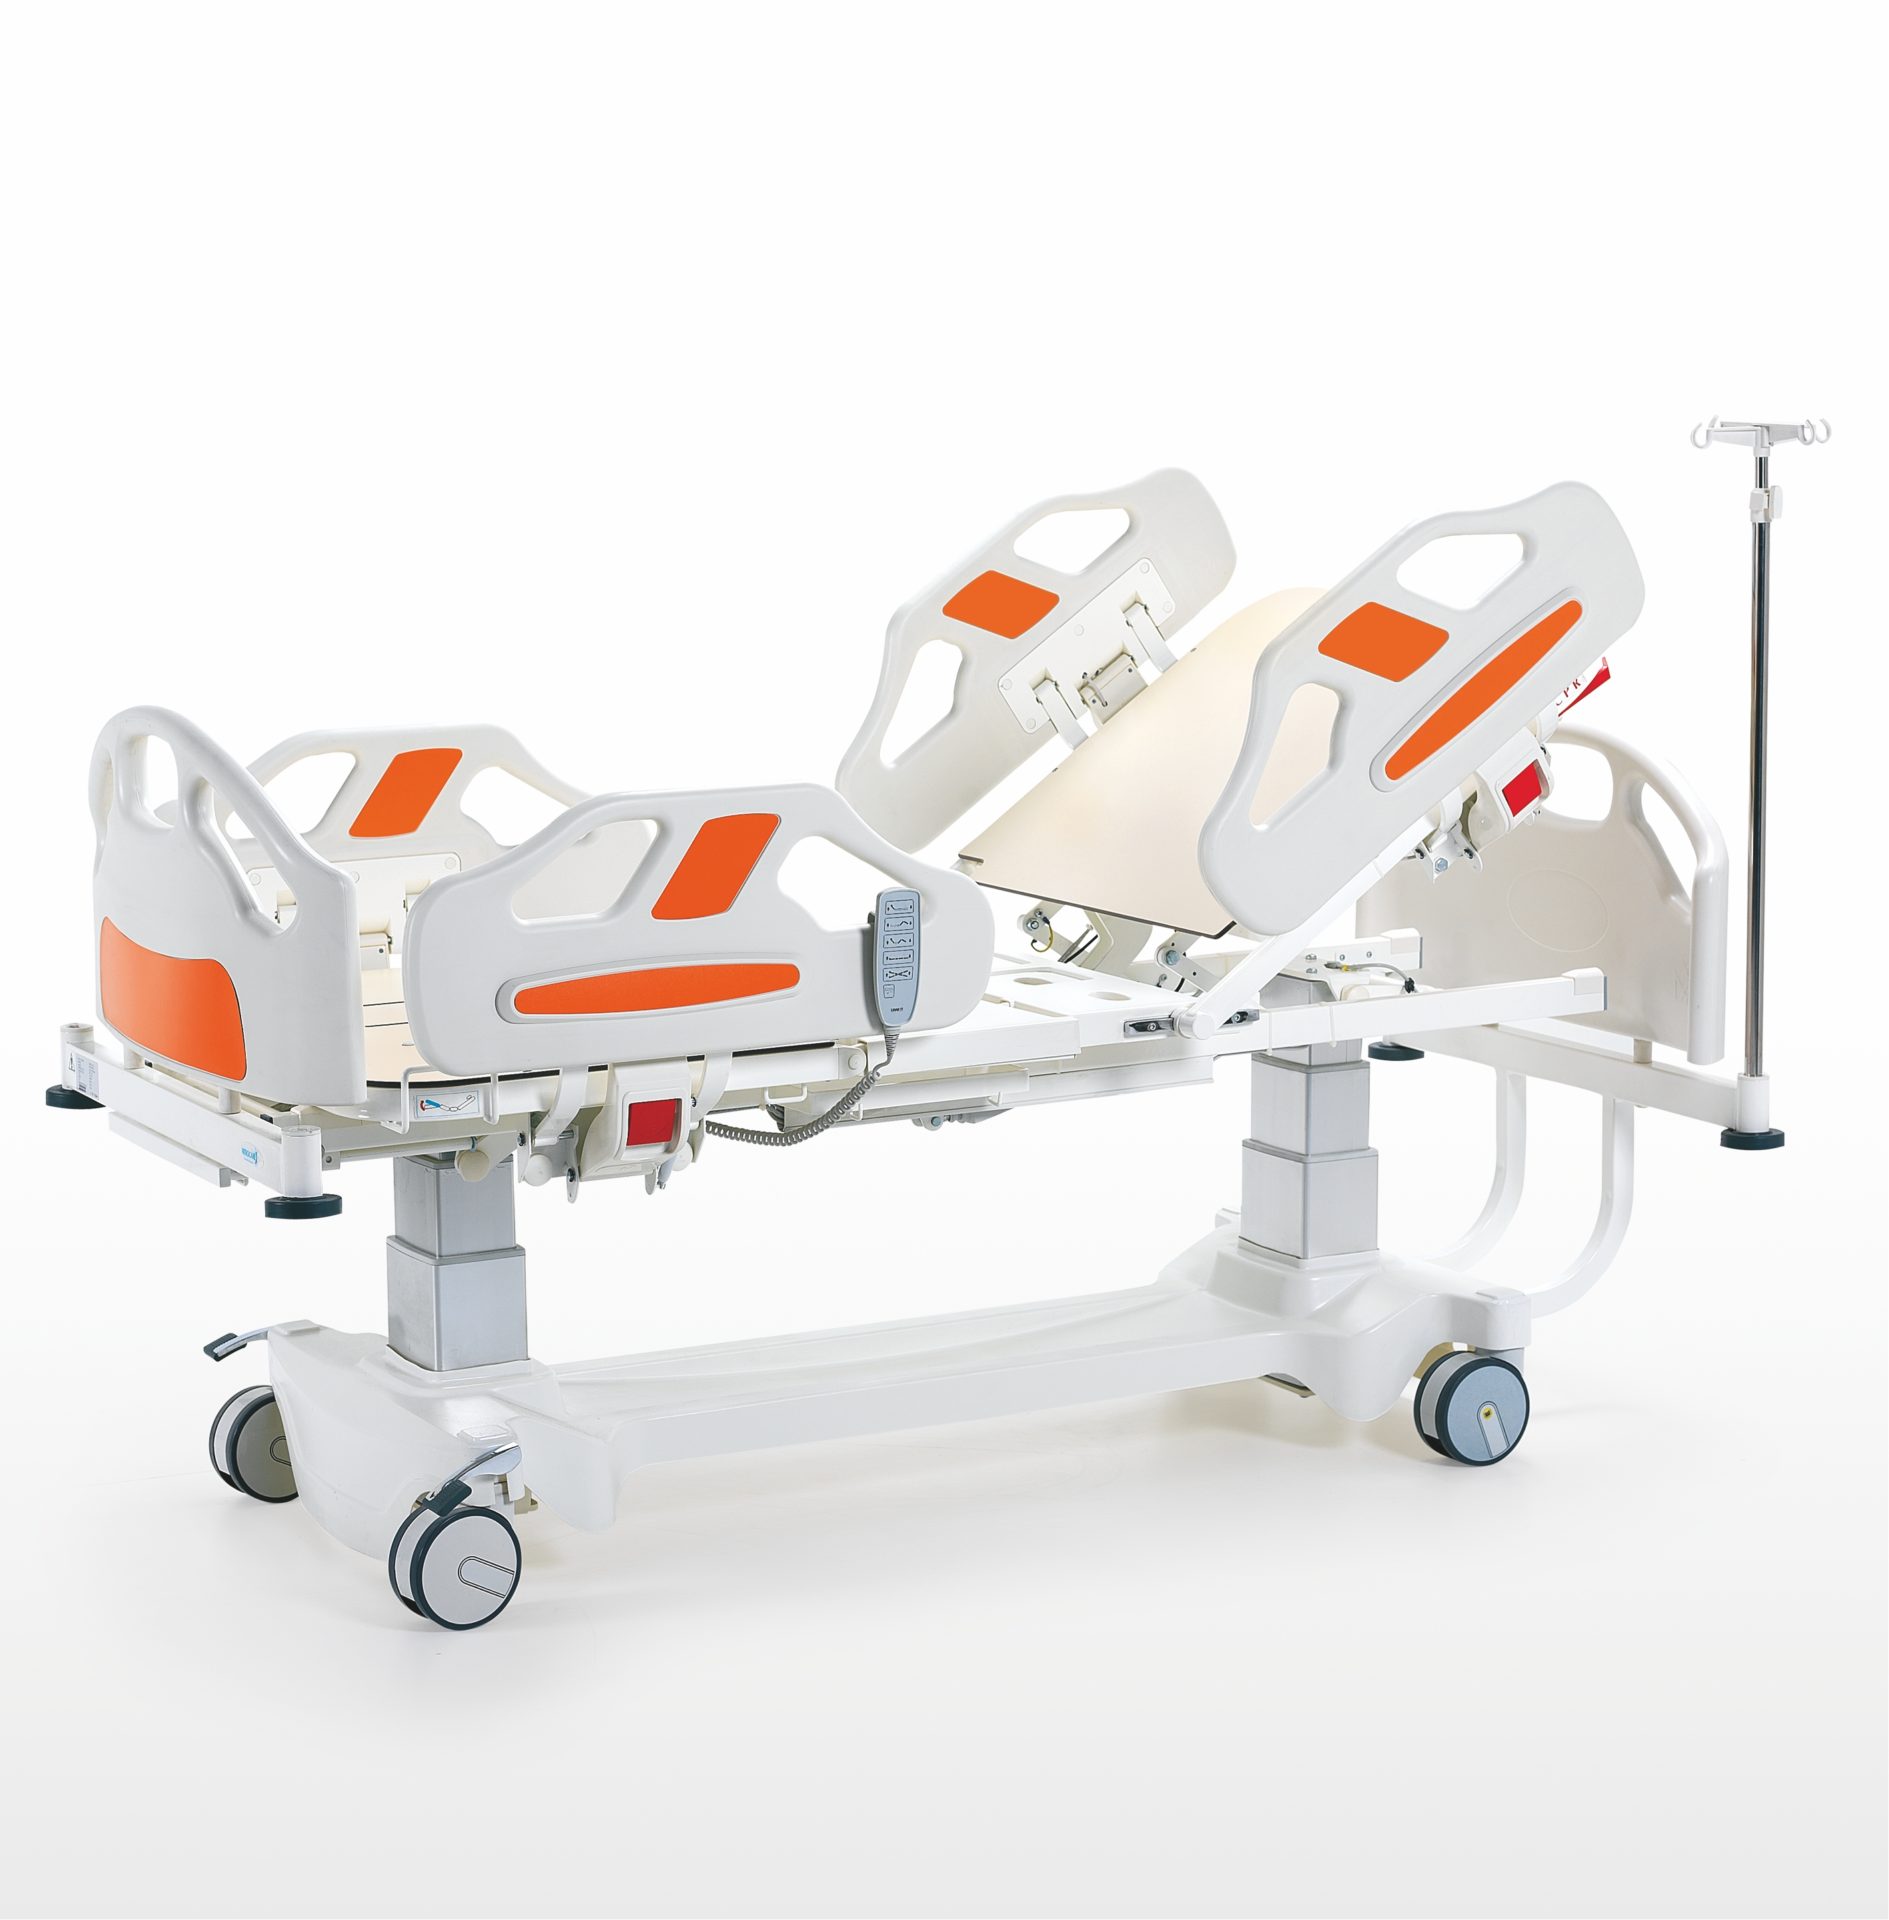 Fiesta 4 Motors Column Model Intensive Care Patient Bed - Electrical Patient Bed